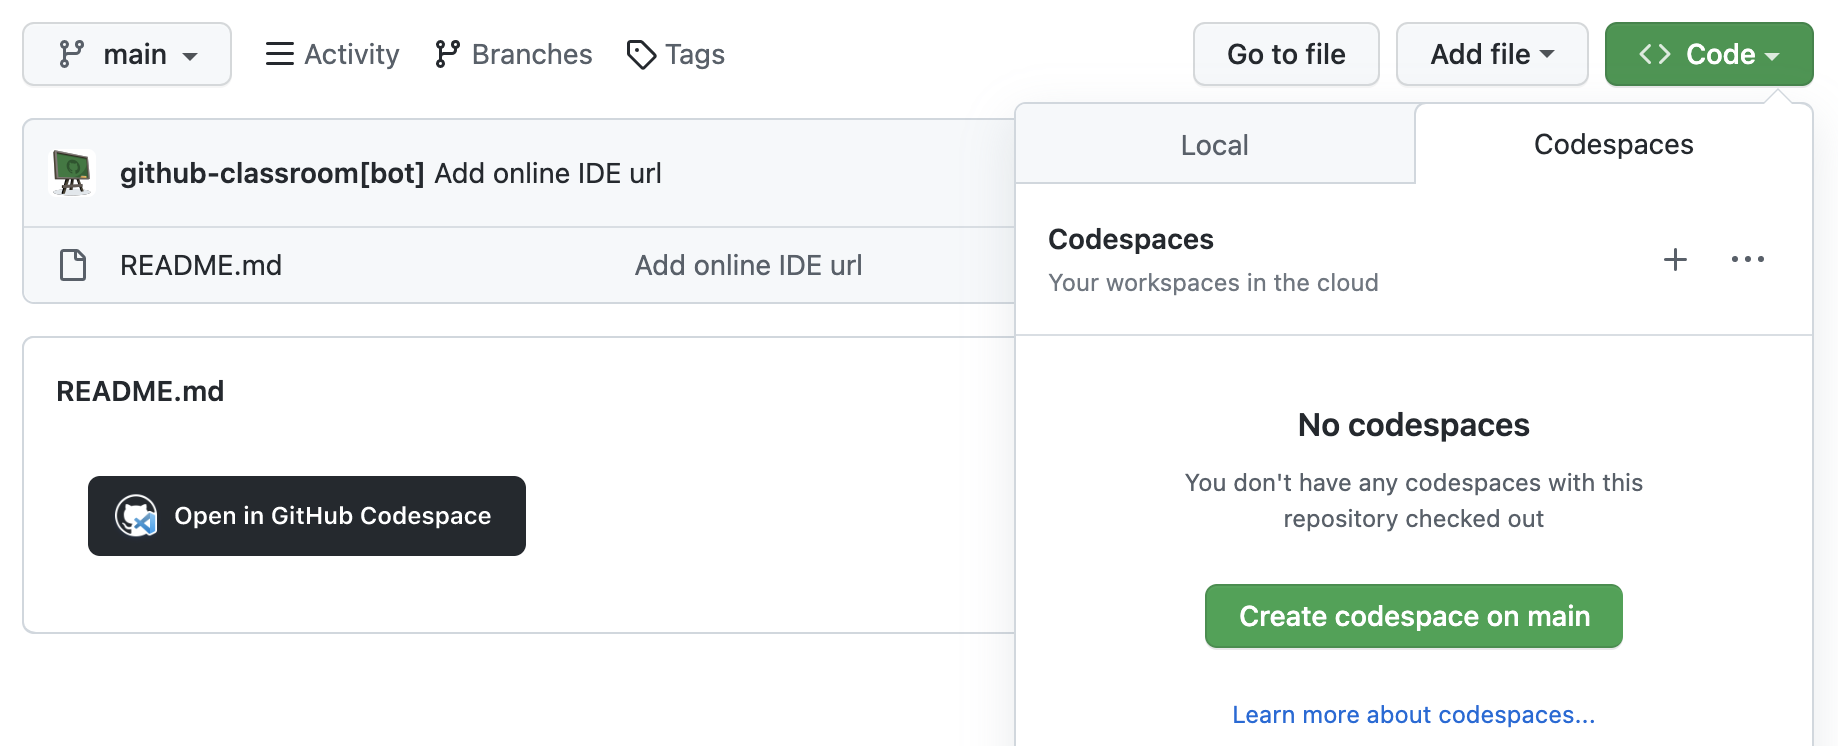 Captura de tela do repositório de tarefas. O menu suspenso "Código" para iniciar um novo codespace é expandido.